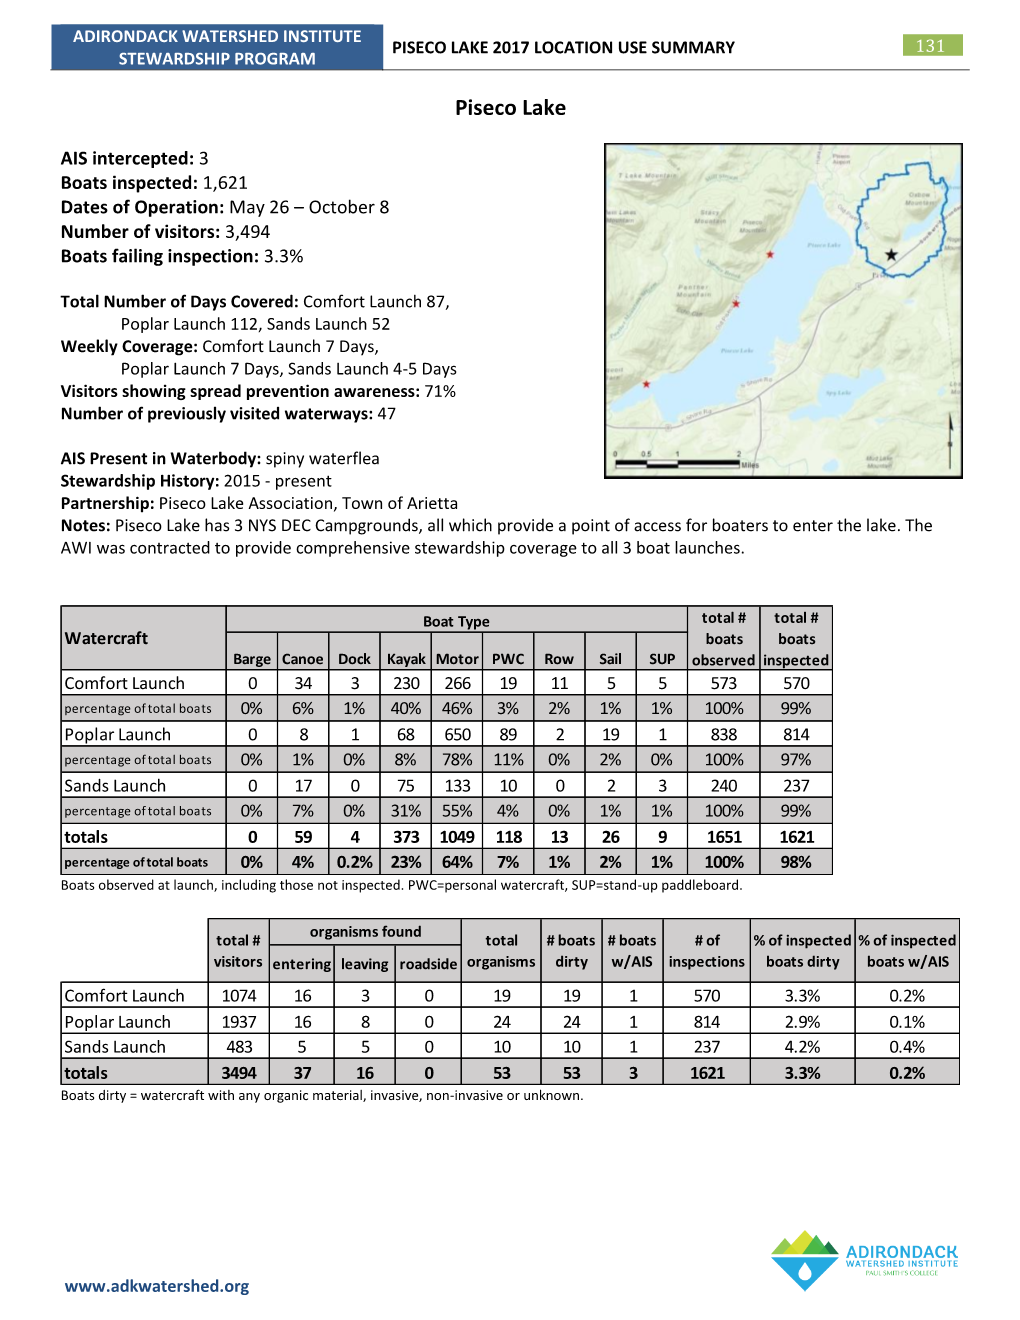 Piseco Lake 2017 Location Use Summary 131 Stewardship Program